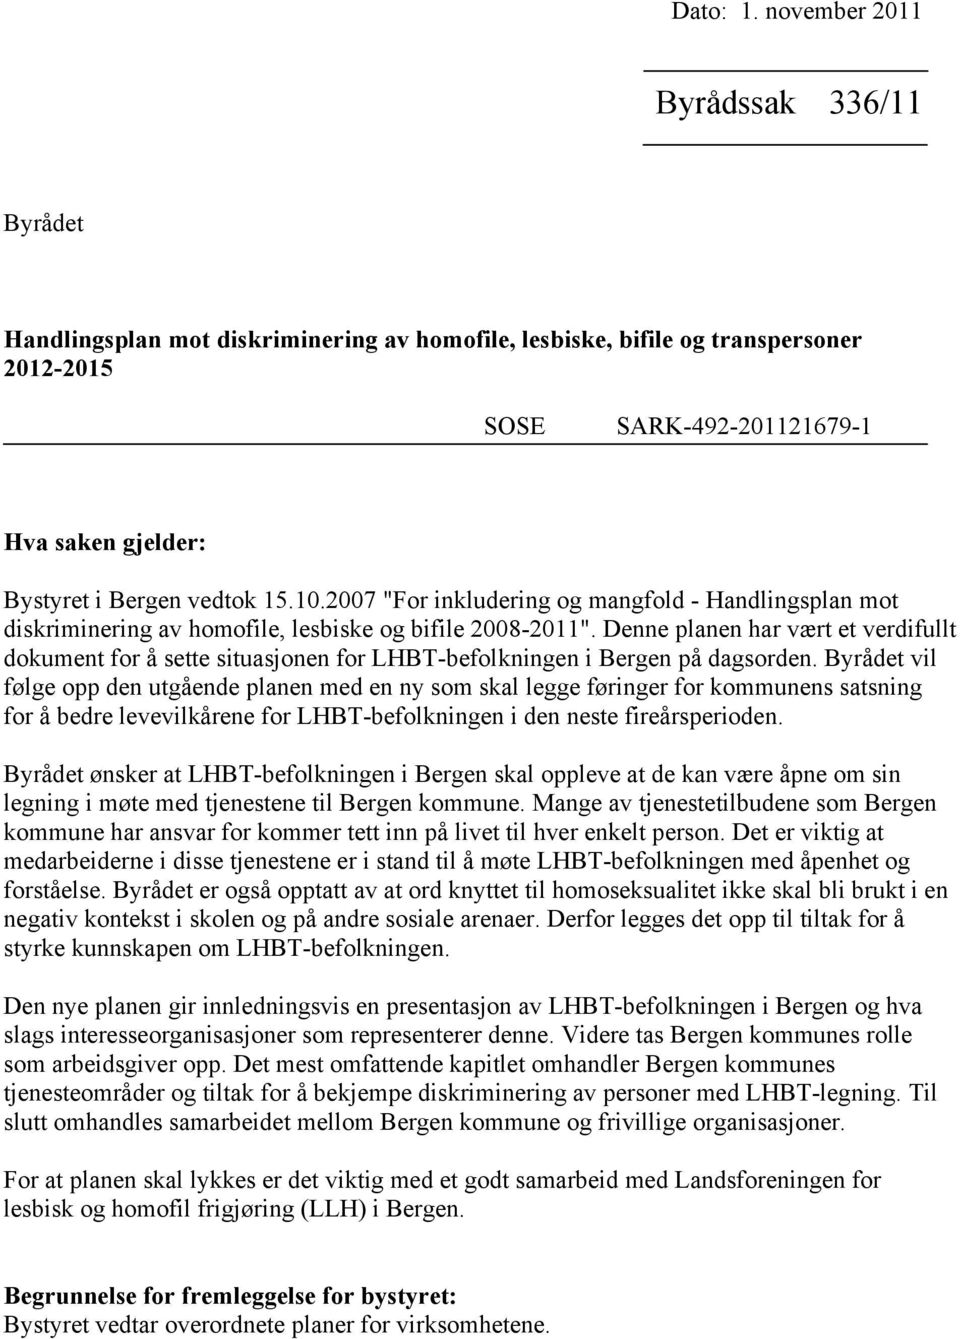 15.10.2007 "For inkludering og mangfold - Handlingsplan mot diskriminering av homofile, lesbiske og bifile 2008-2011".